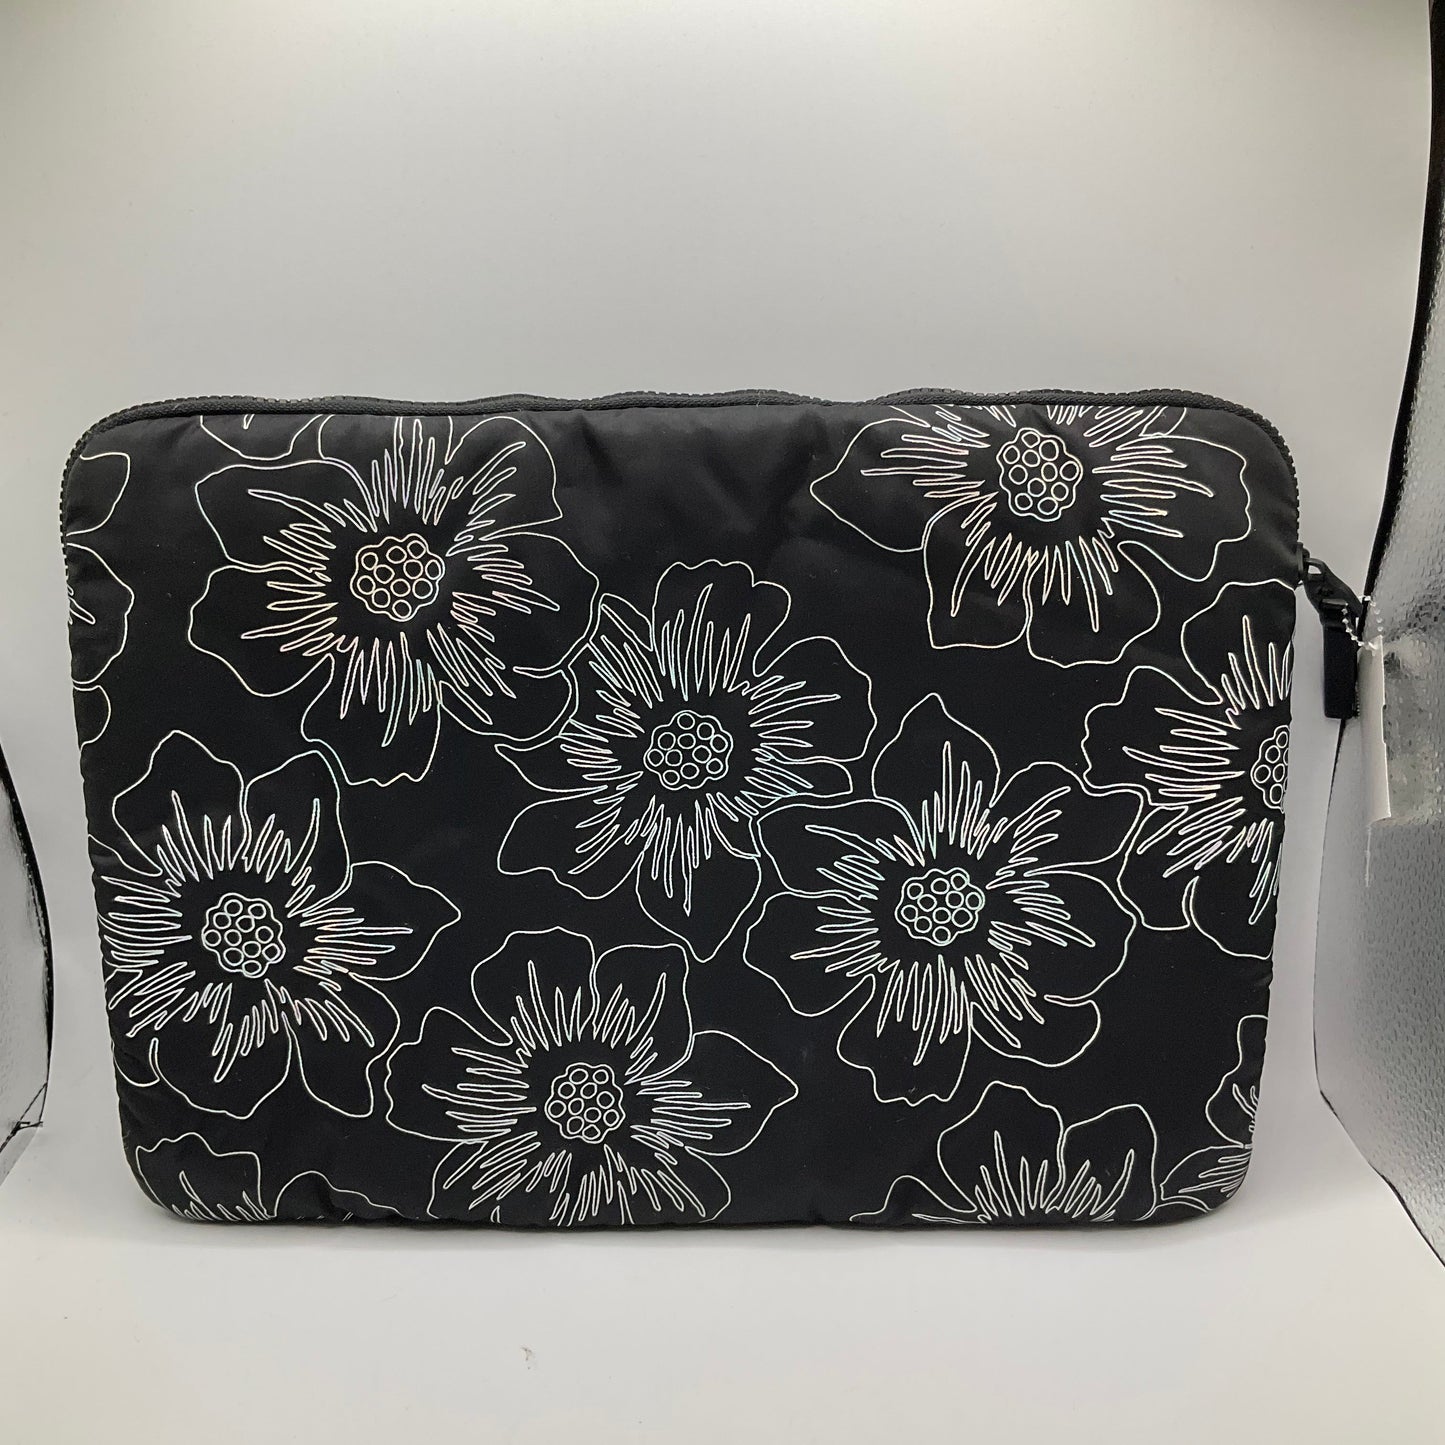 Laptop Bag Designer Kate Spade, Size Medium